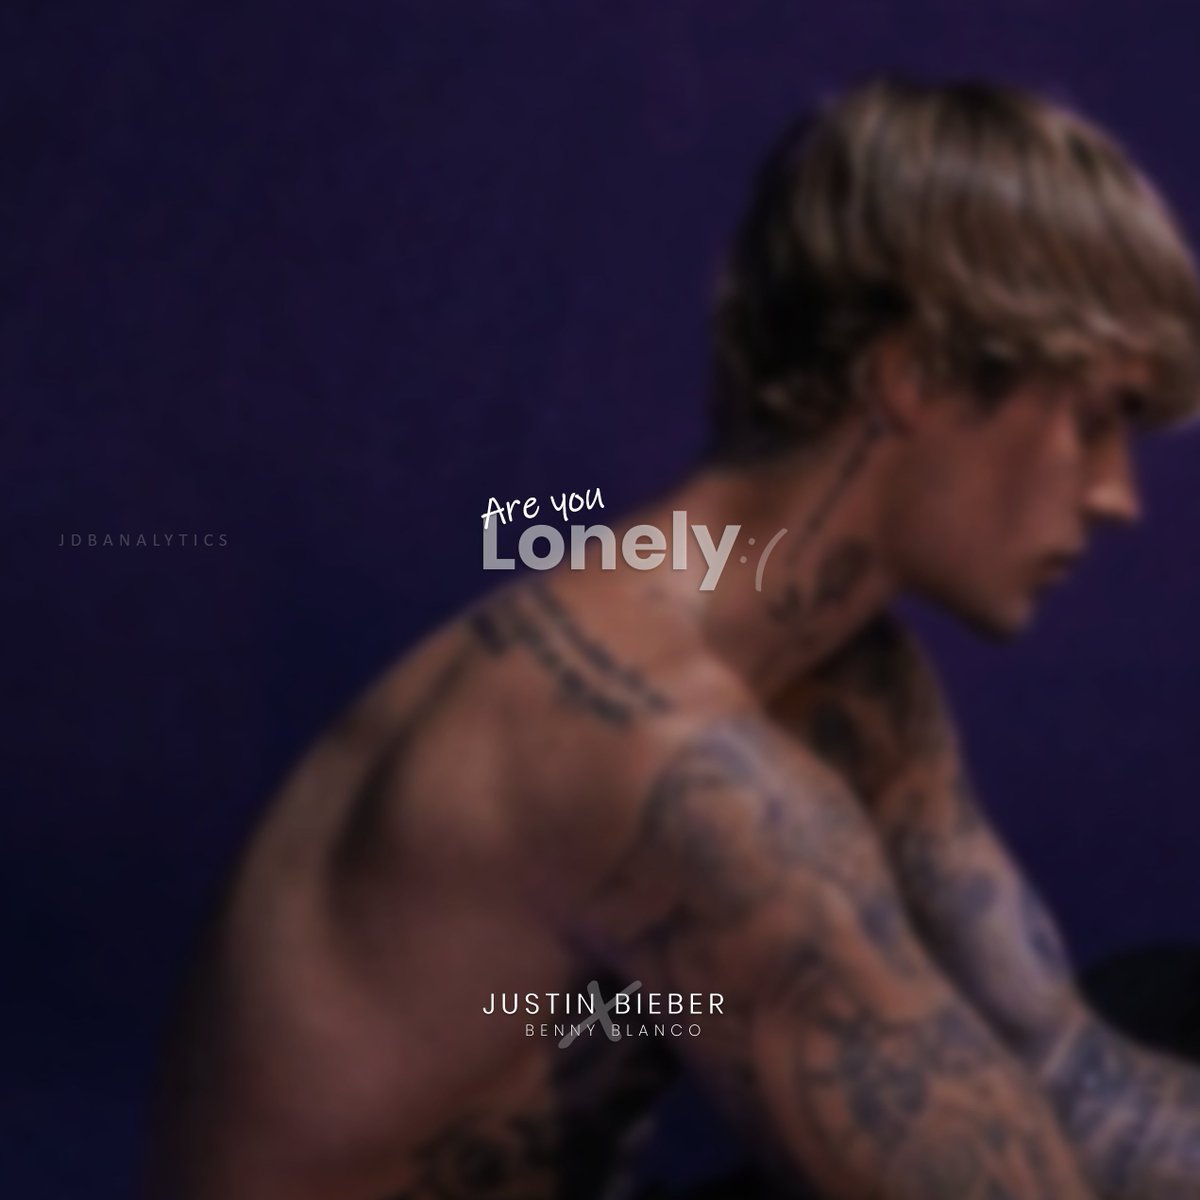  Justin Bieber “cảm thấy cô đơn” chính là “miếng thính” của anh chàng cùng Benny Blanco